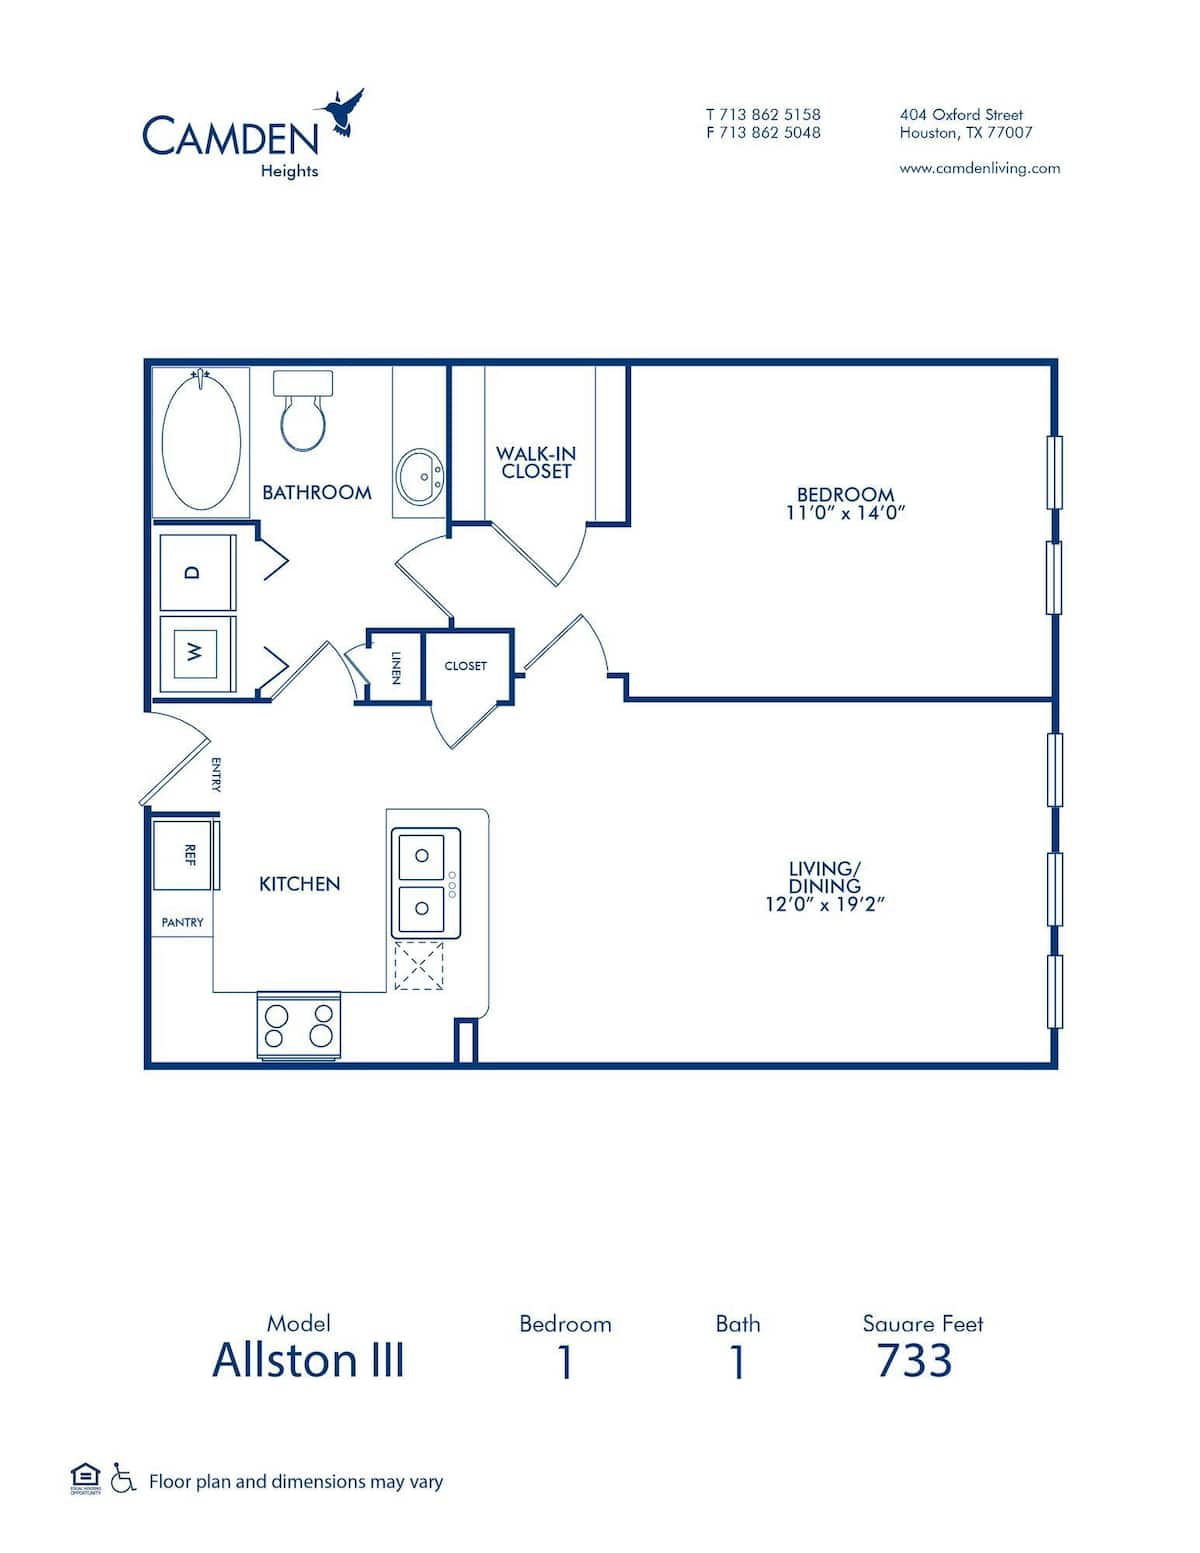 Floorplan diagram for The Allston III, showing 1 bedroom